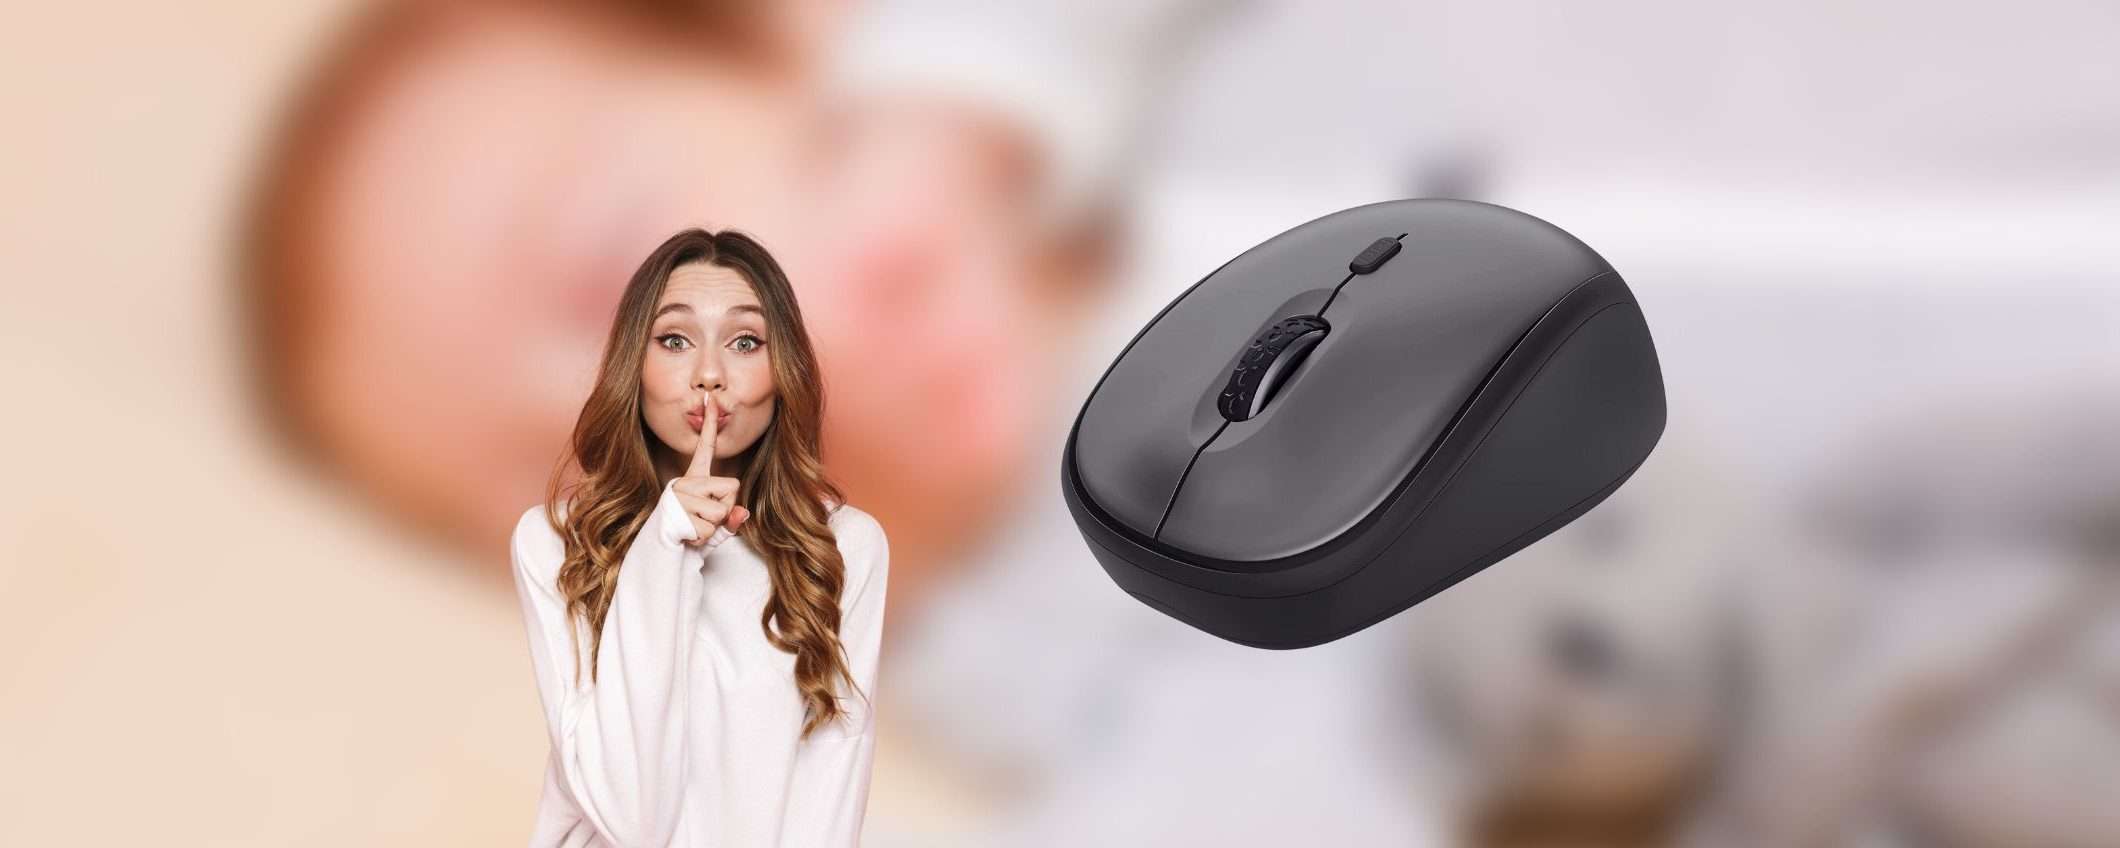 Il mouse wireless silenzioso che cercavi ti costa meno di 10 euro